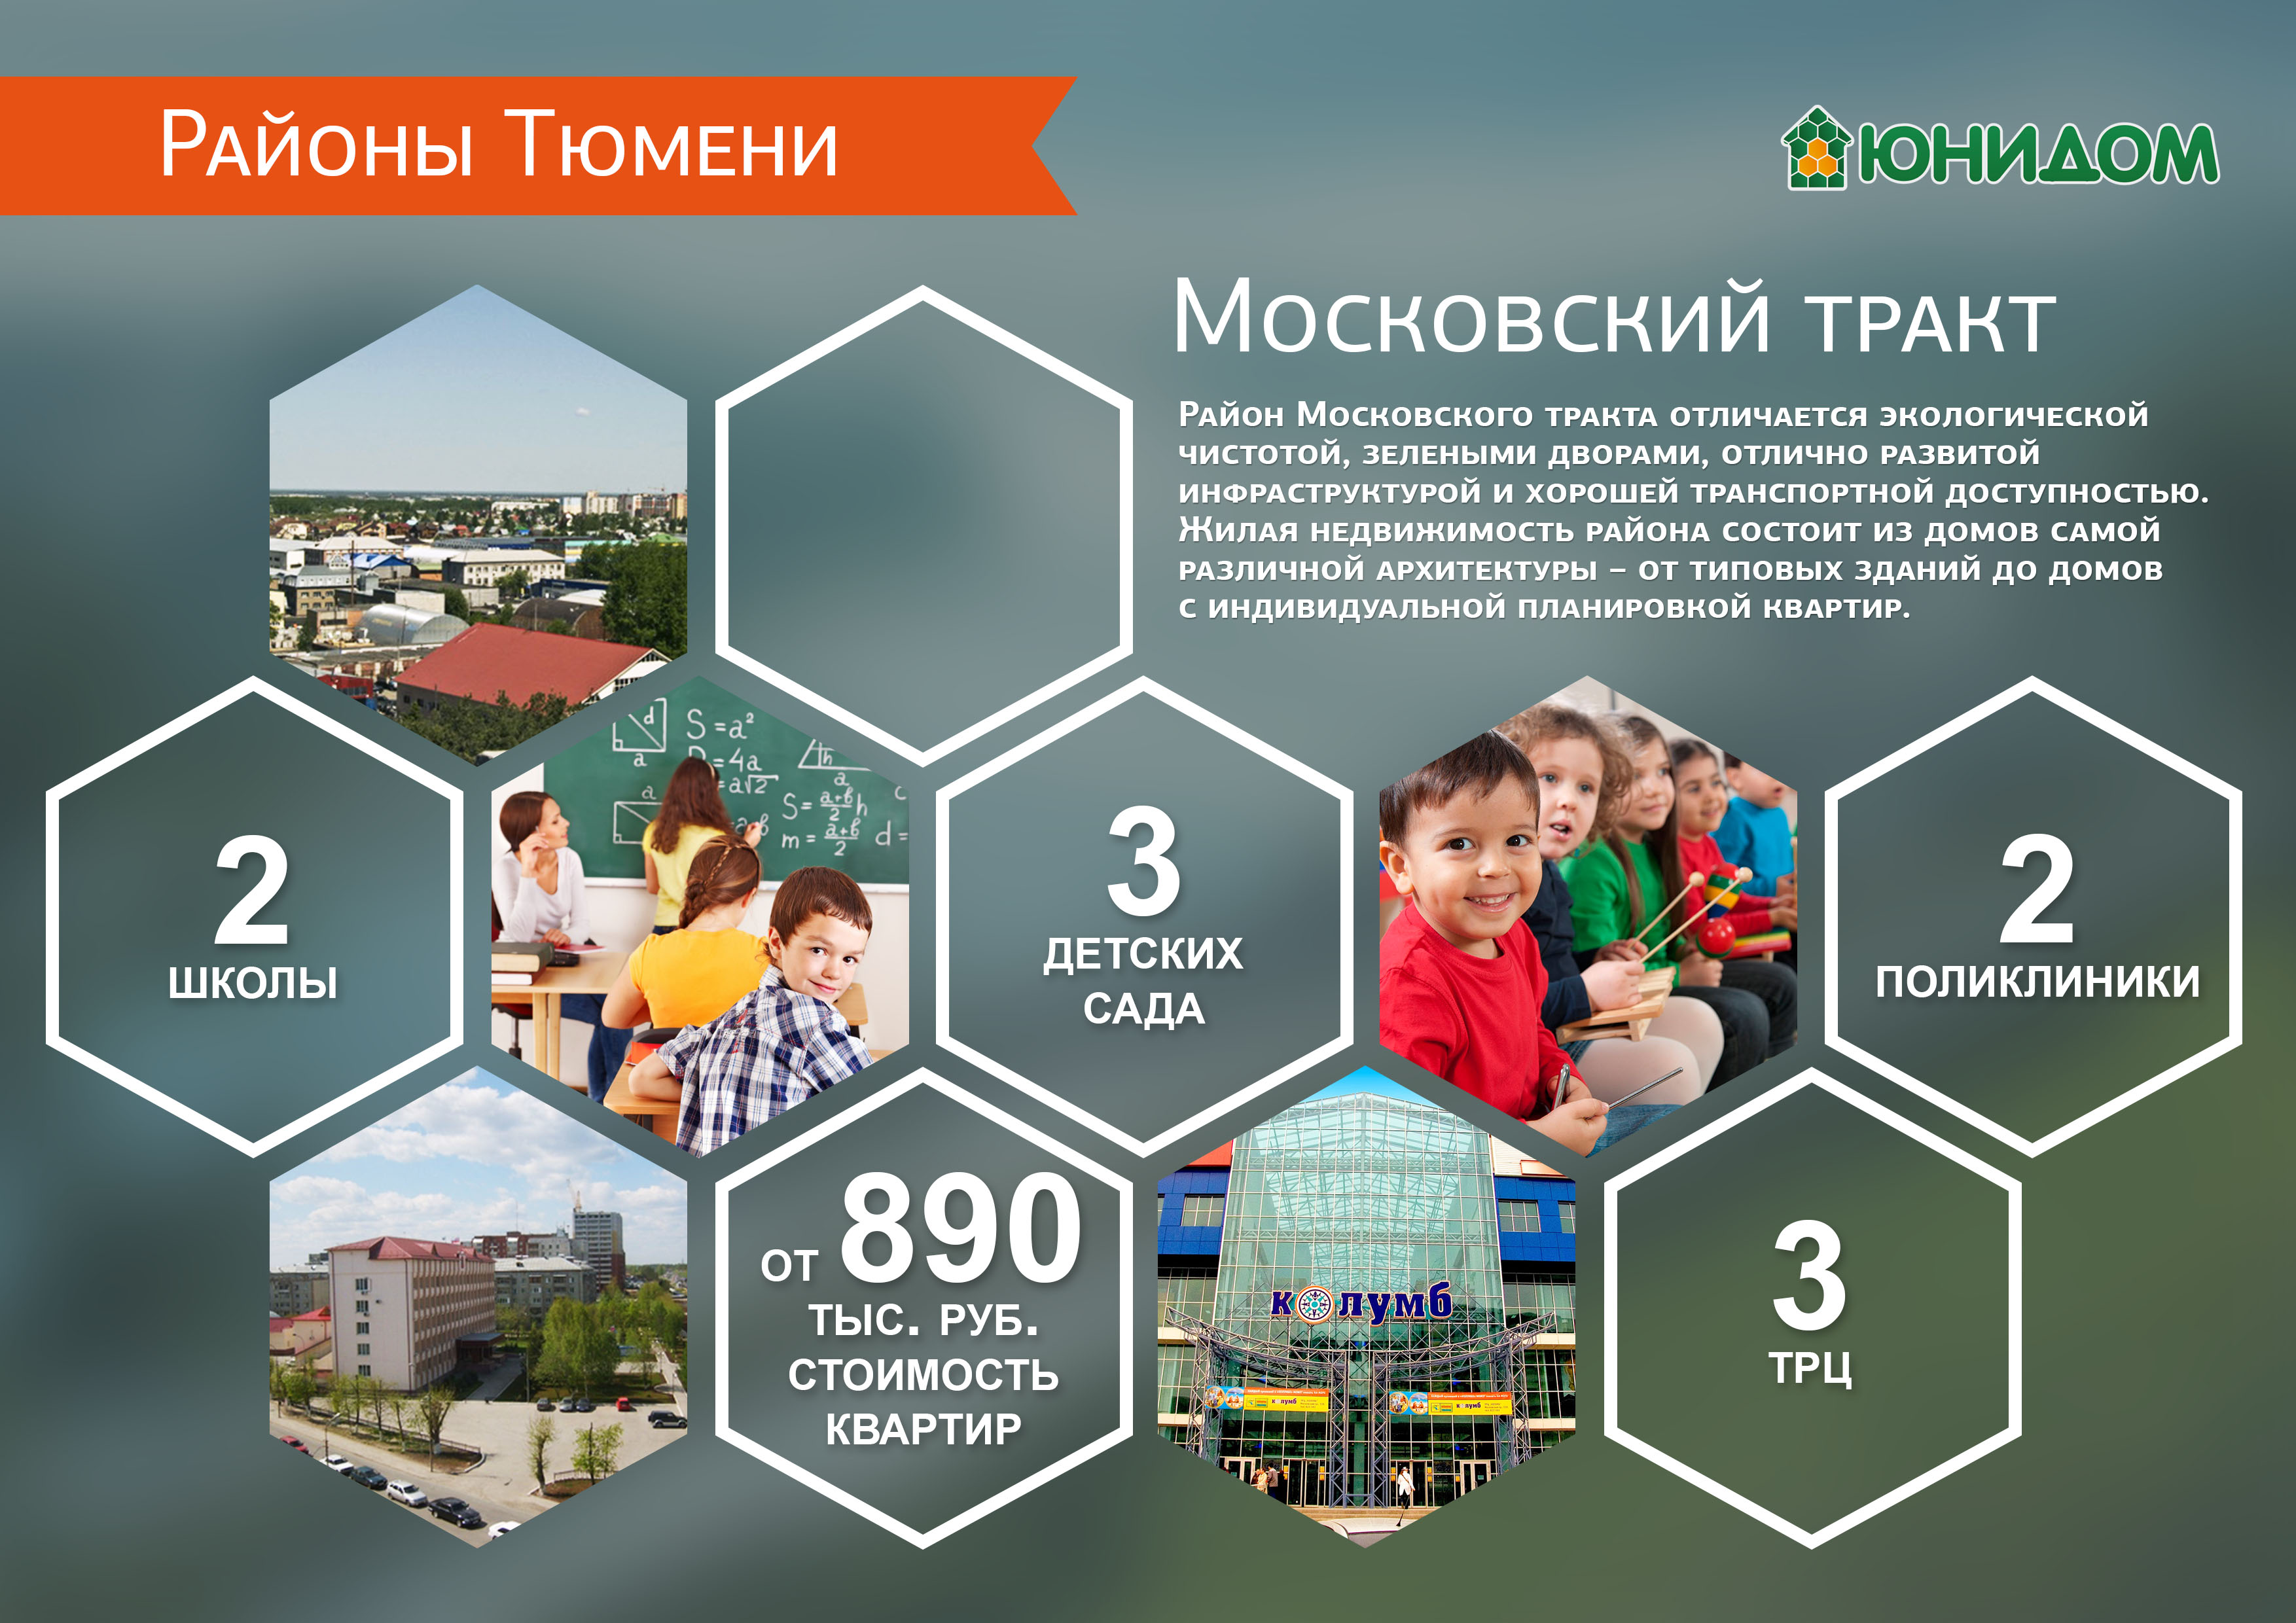 Районы Тюмени: Московский тракт